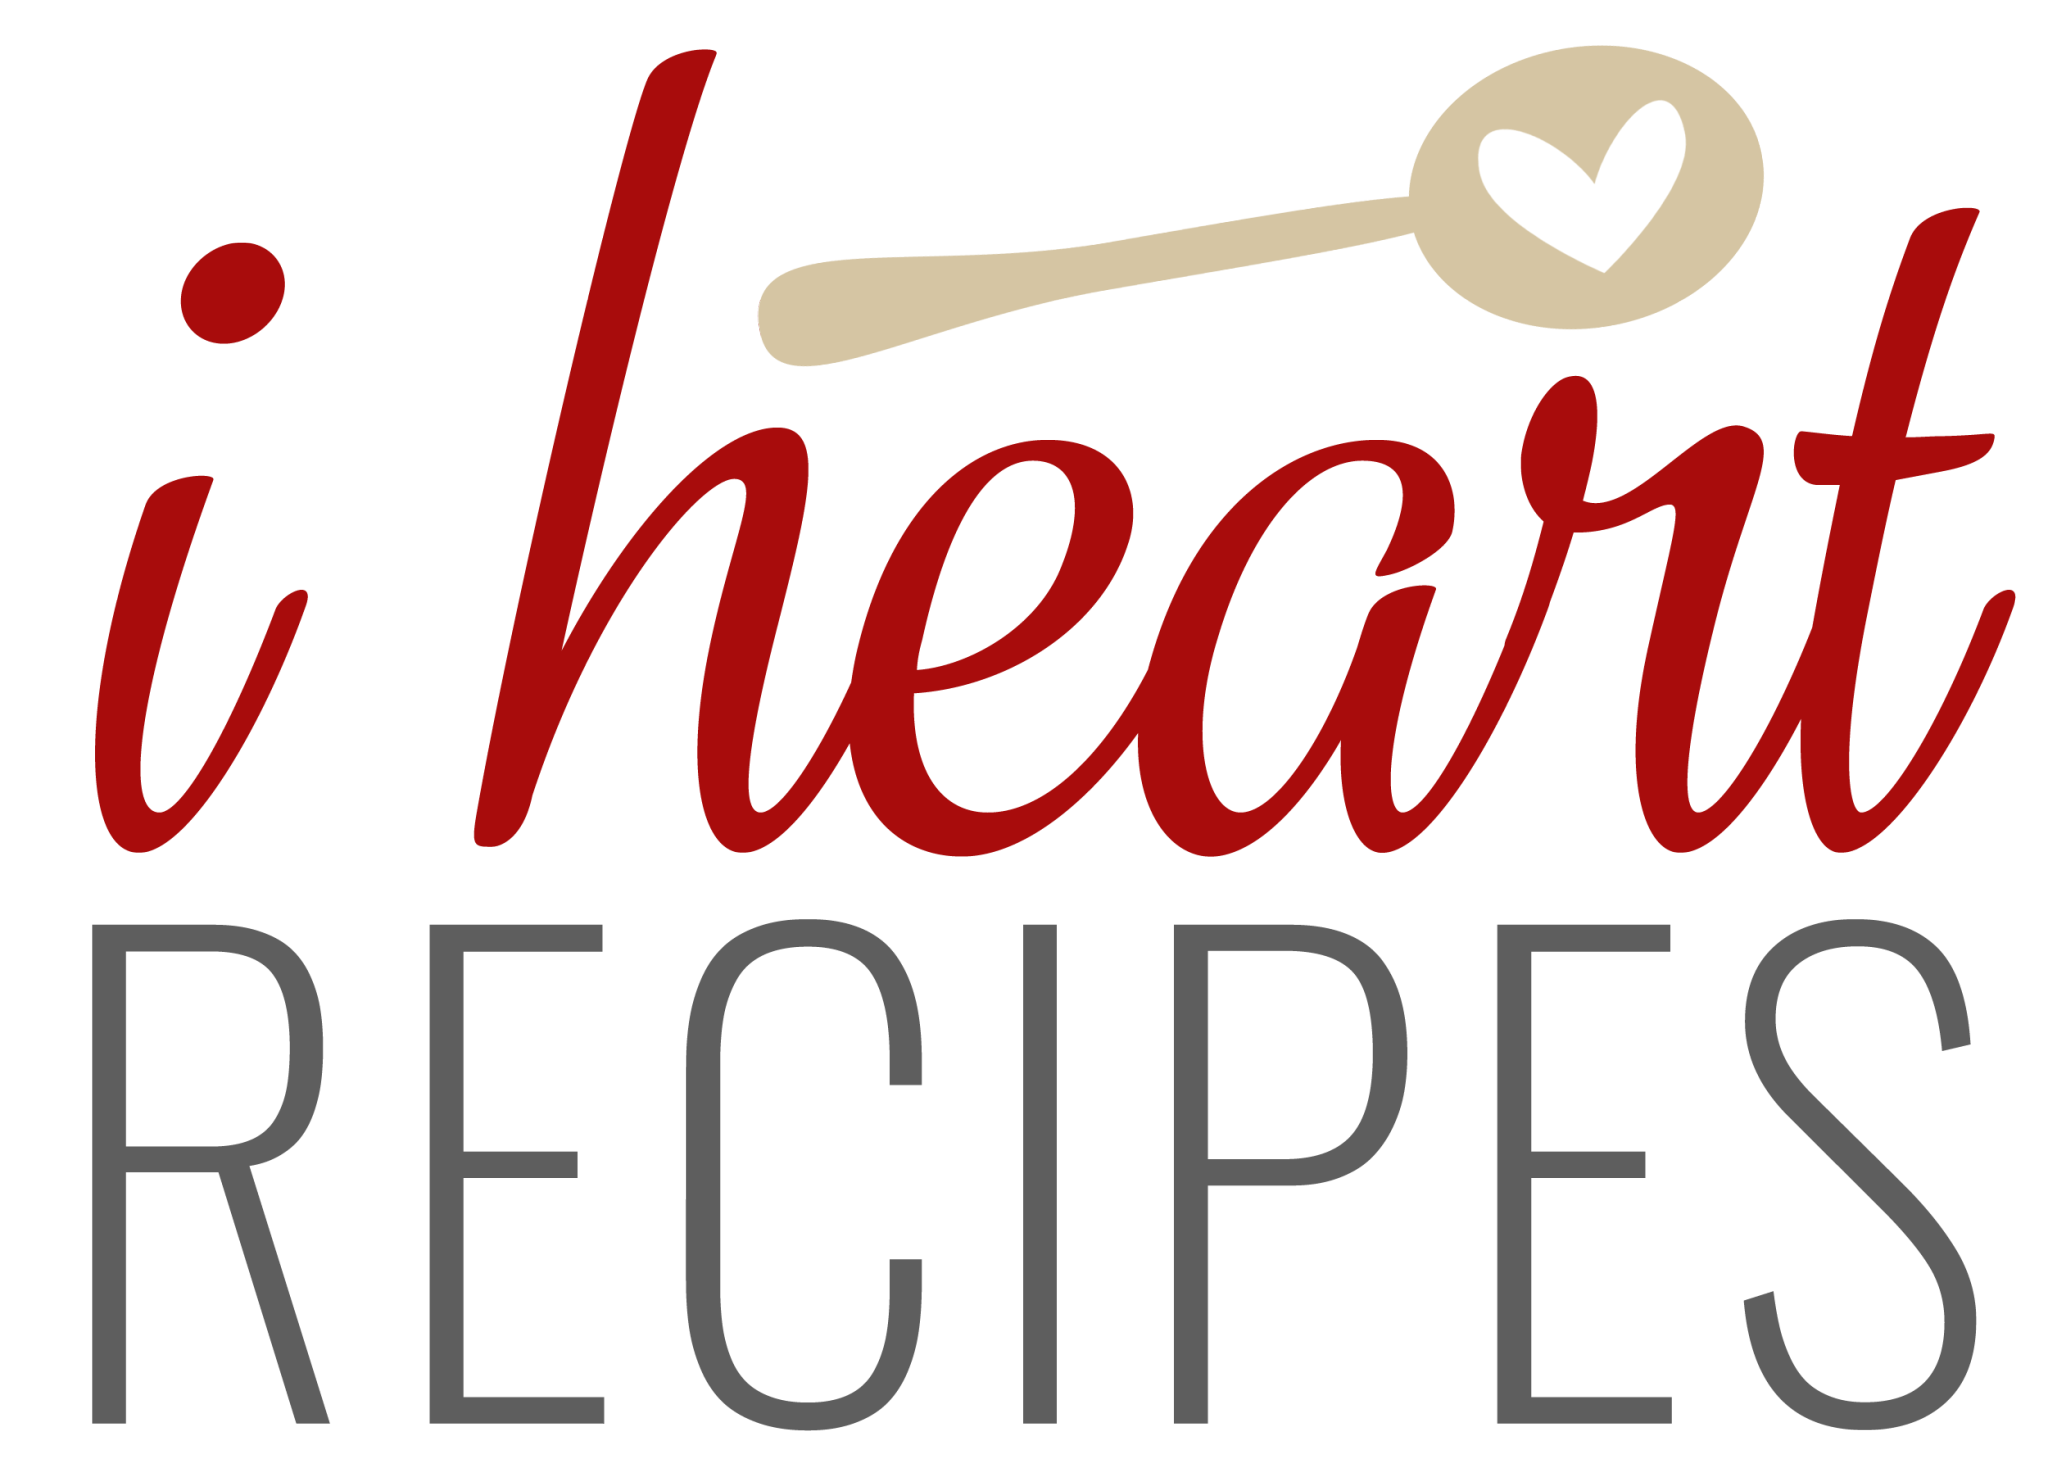 I Heart Recipes